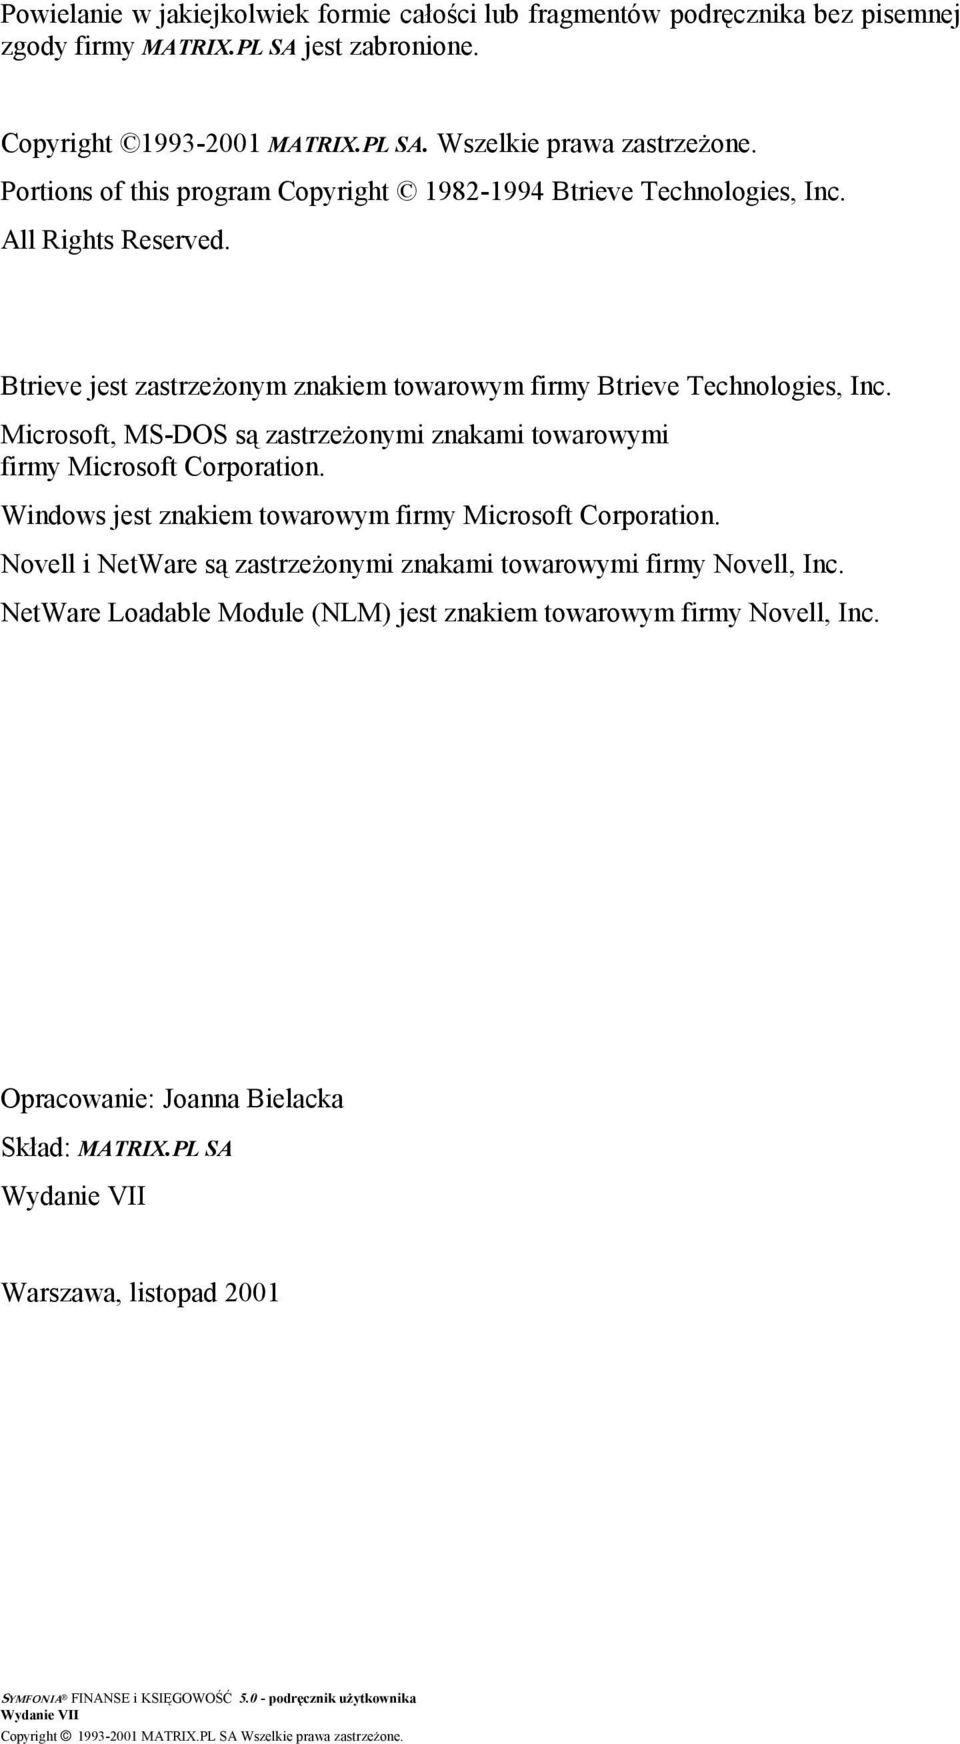 Microsoft, MS-DOS są zastrzeżonymi znakami towarowymi firmy Microsoft Corporation. Windows jest znakiem towarowym firmy Microsoft Corporation.